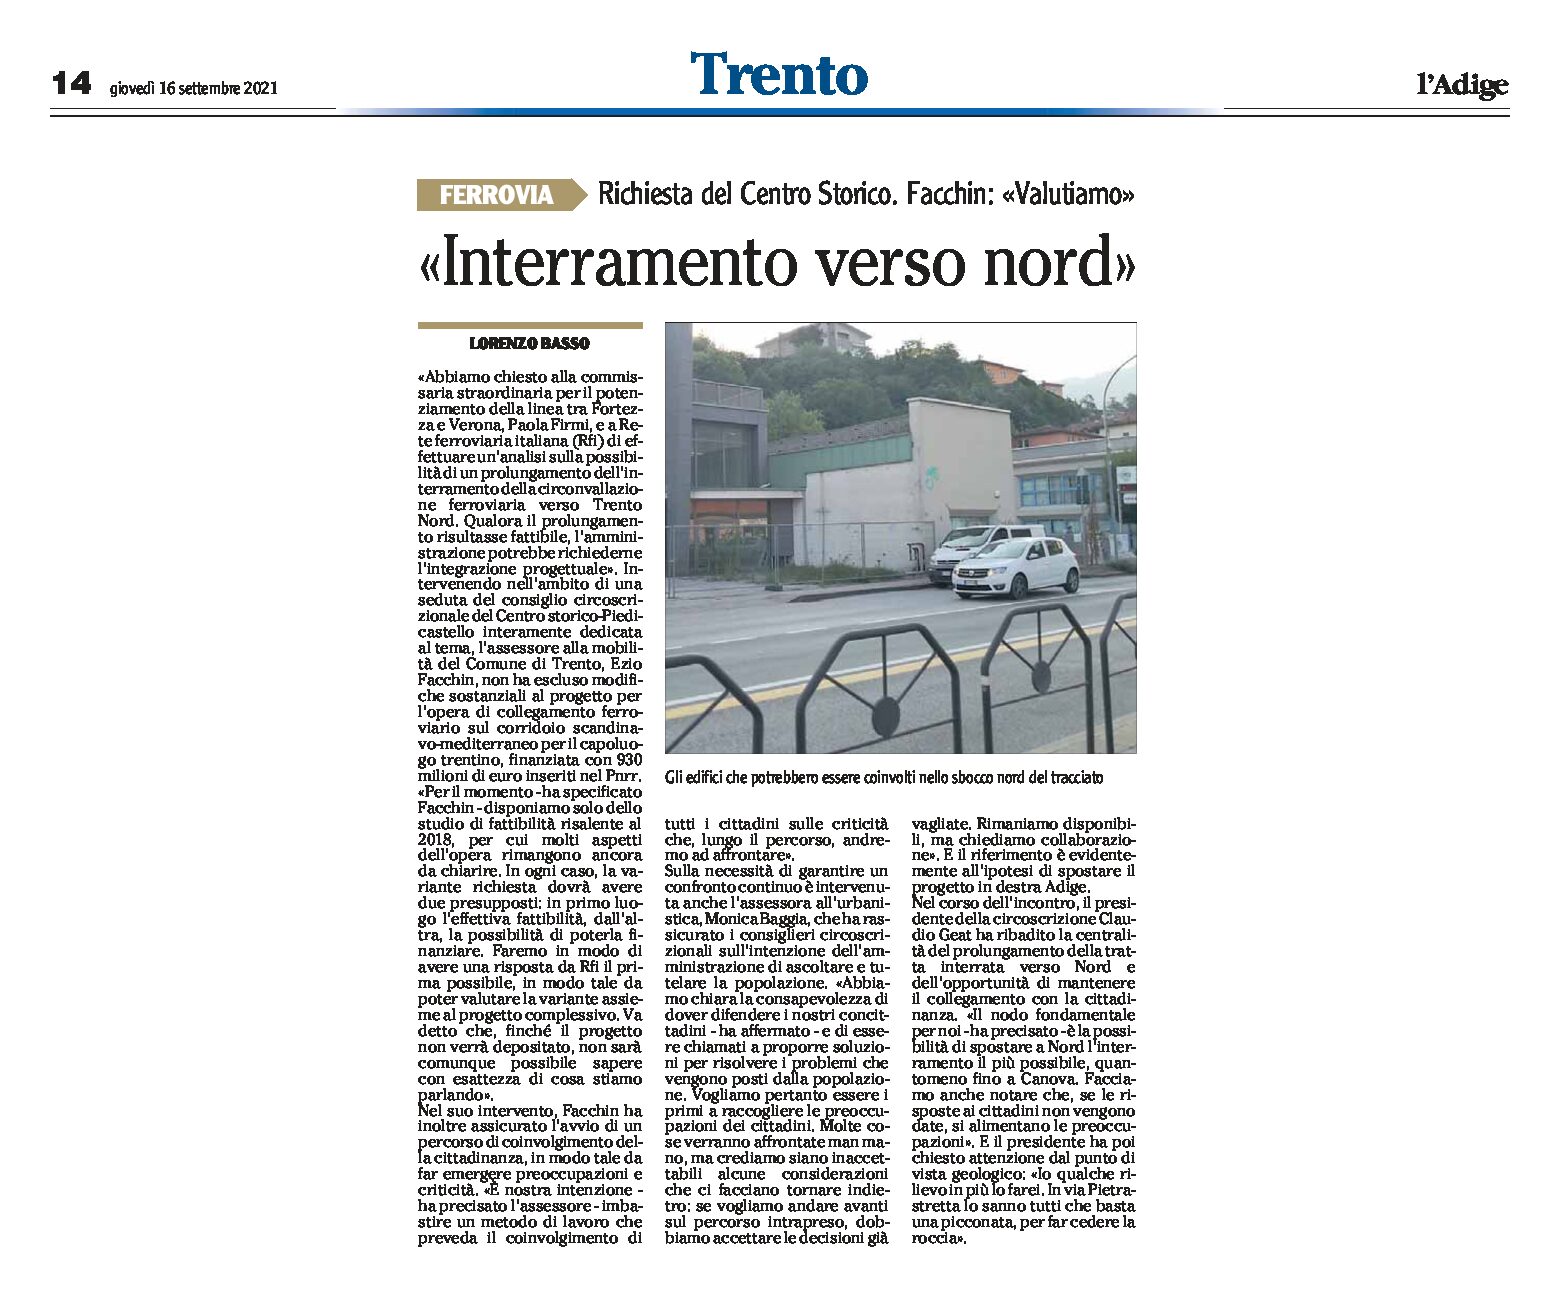 Trento, ferrovia: richiesta del Centro Storico “prolungamento dell’interramento verso nord”